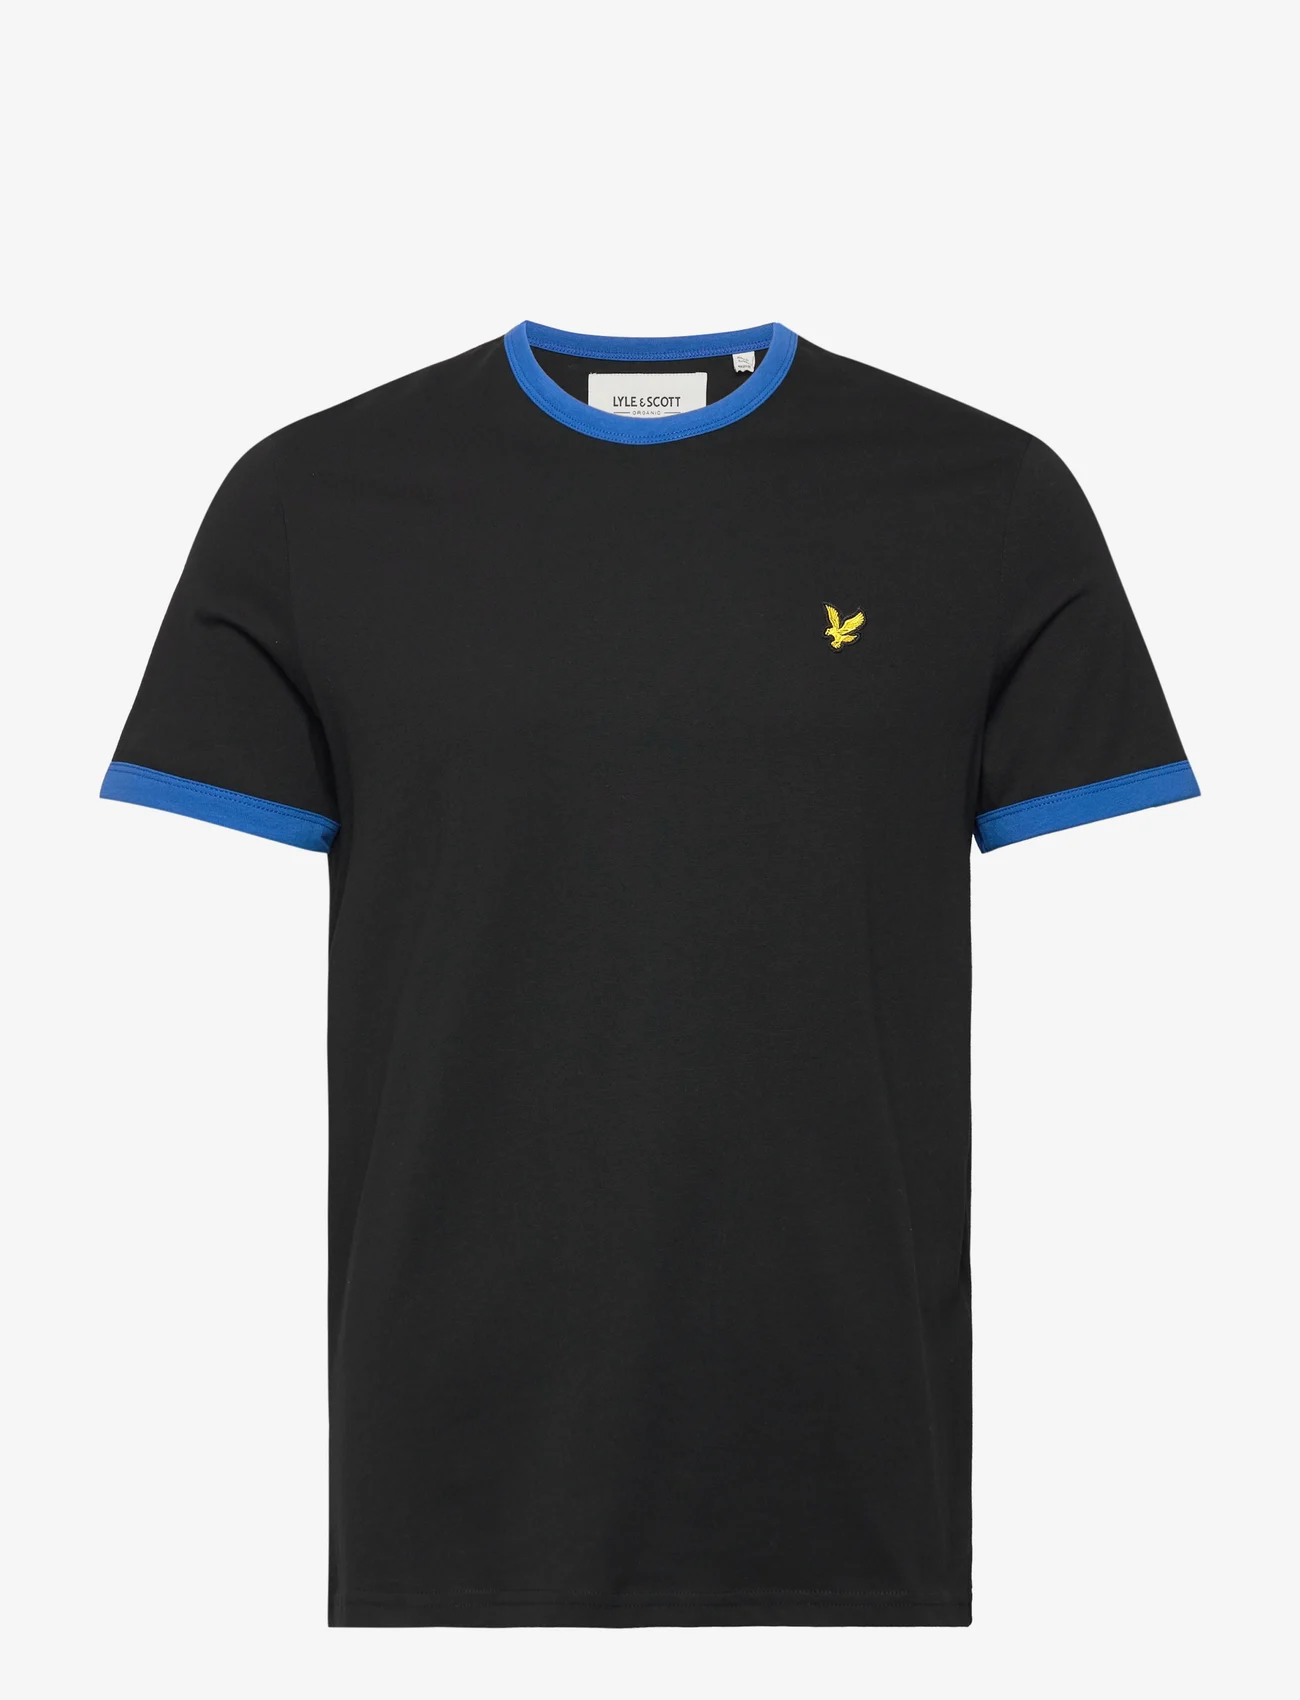 Lyle & Scott - Ringer T-Shirt - laagste prijzen - jet black/ bright blue - 0